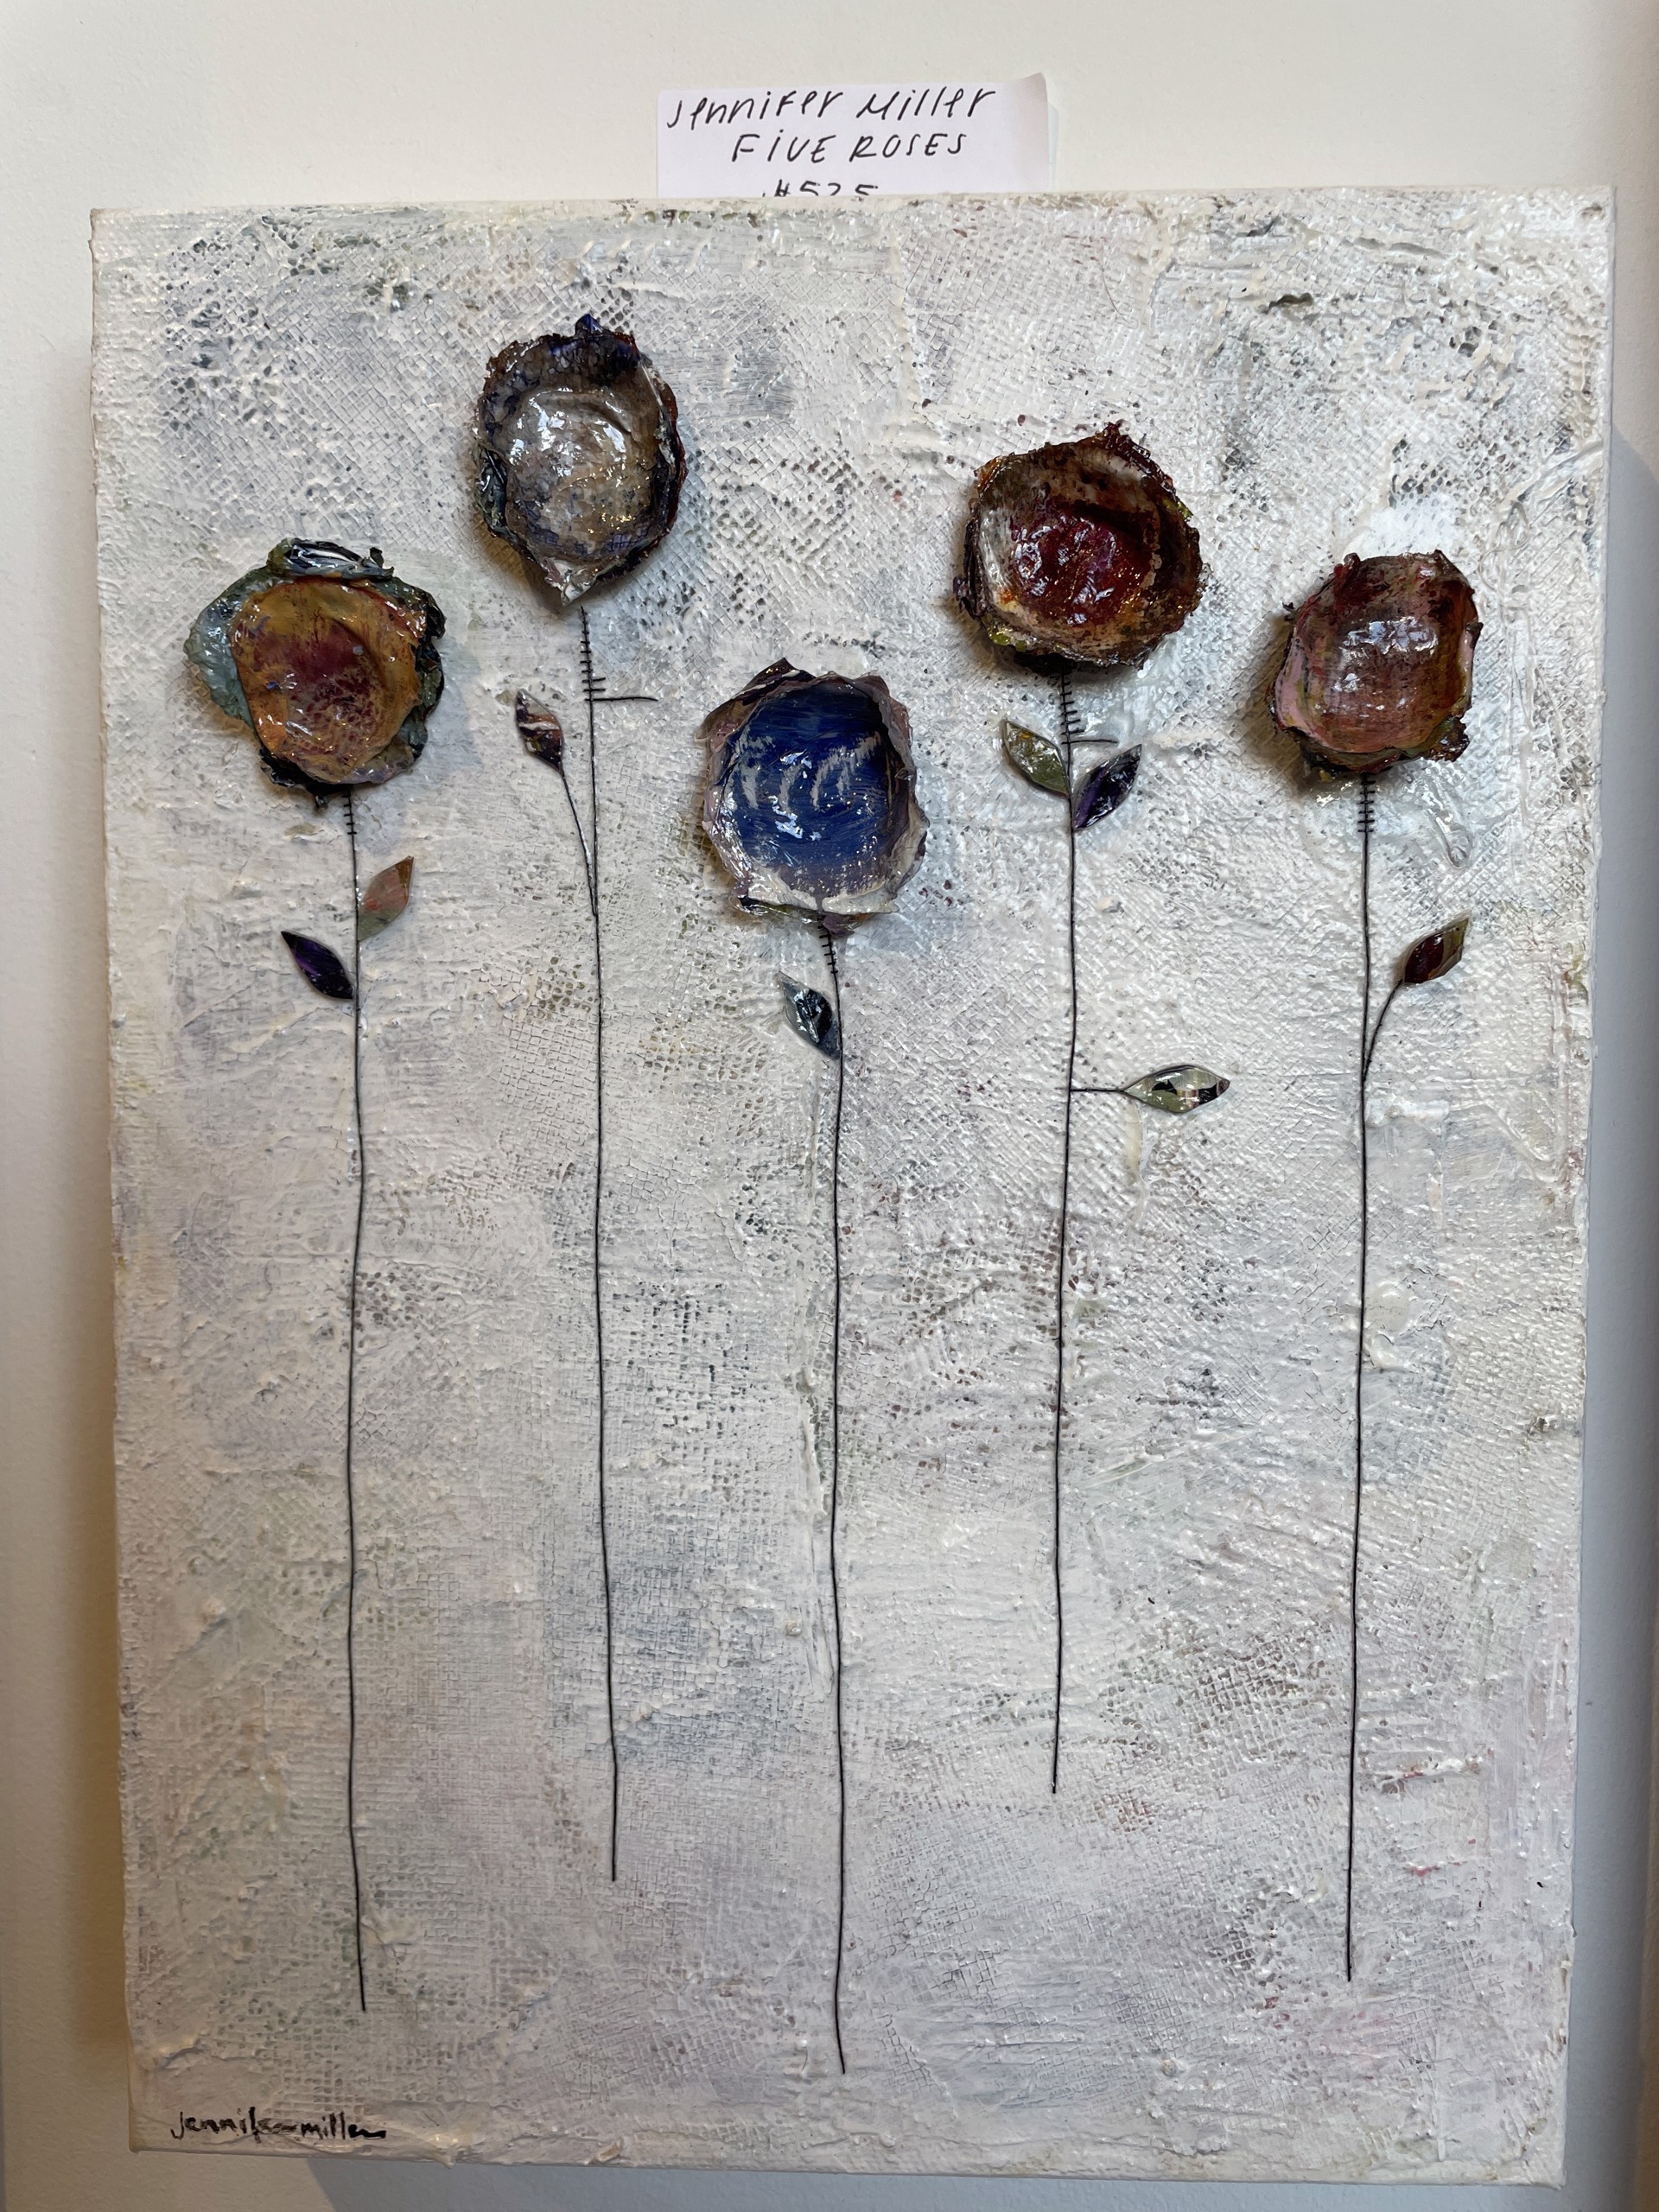 Five Roses by Jennifer Miller